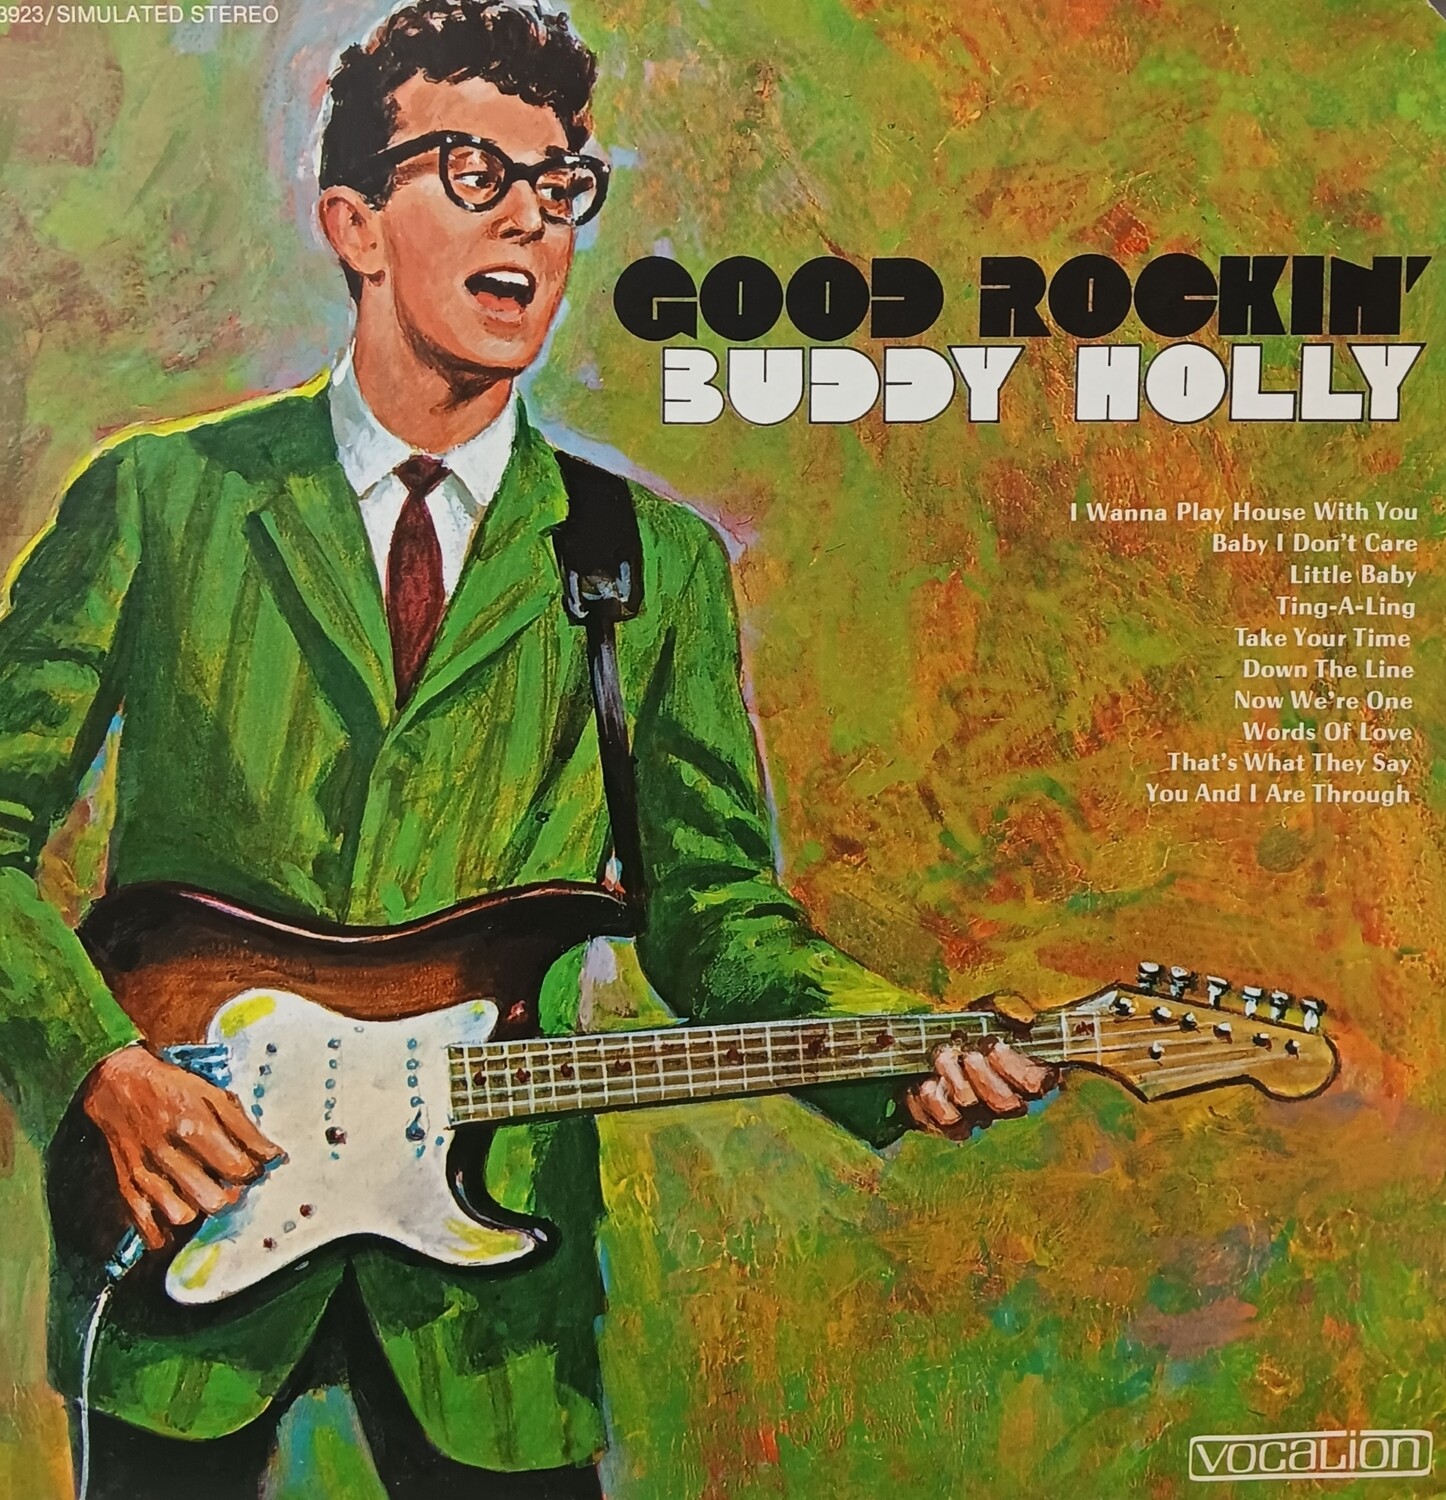 BUDDY HOLLY - Good Rockin